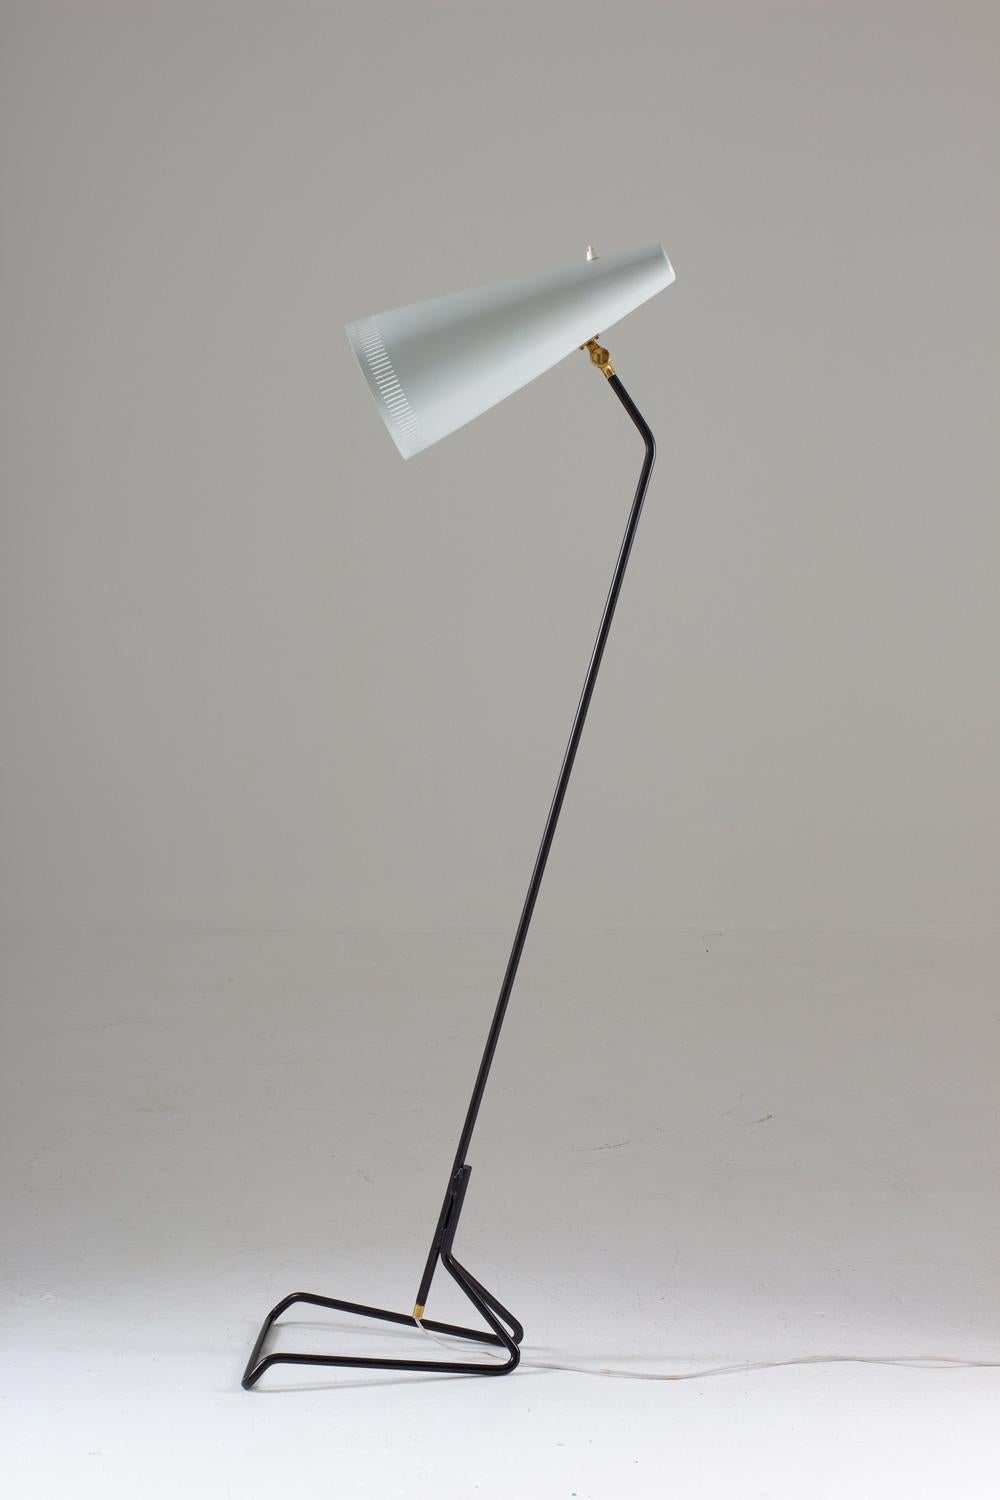 Très rare lampadaire produit en Suède, dans les années 1950.
Cette lampe au design spectaculaire se compose d'un pied en métal, supportant un grand abat-jour en métal perforé (mesure 41cm / 16